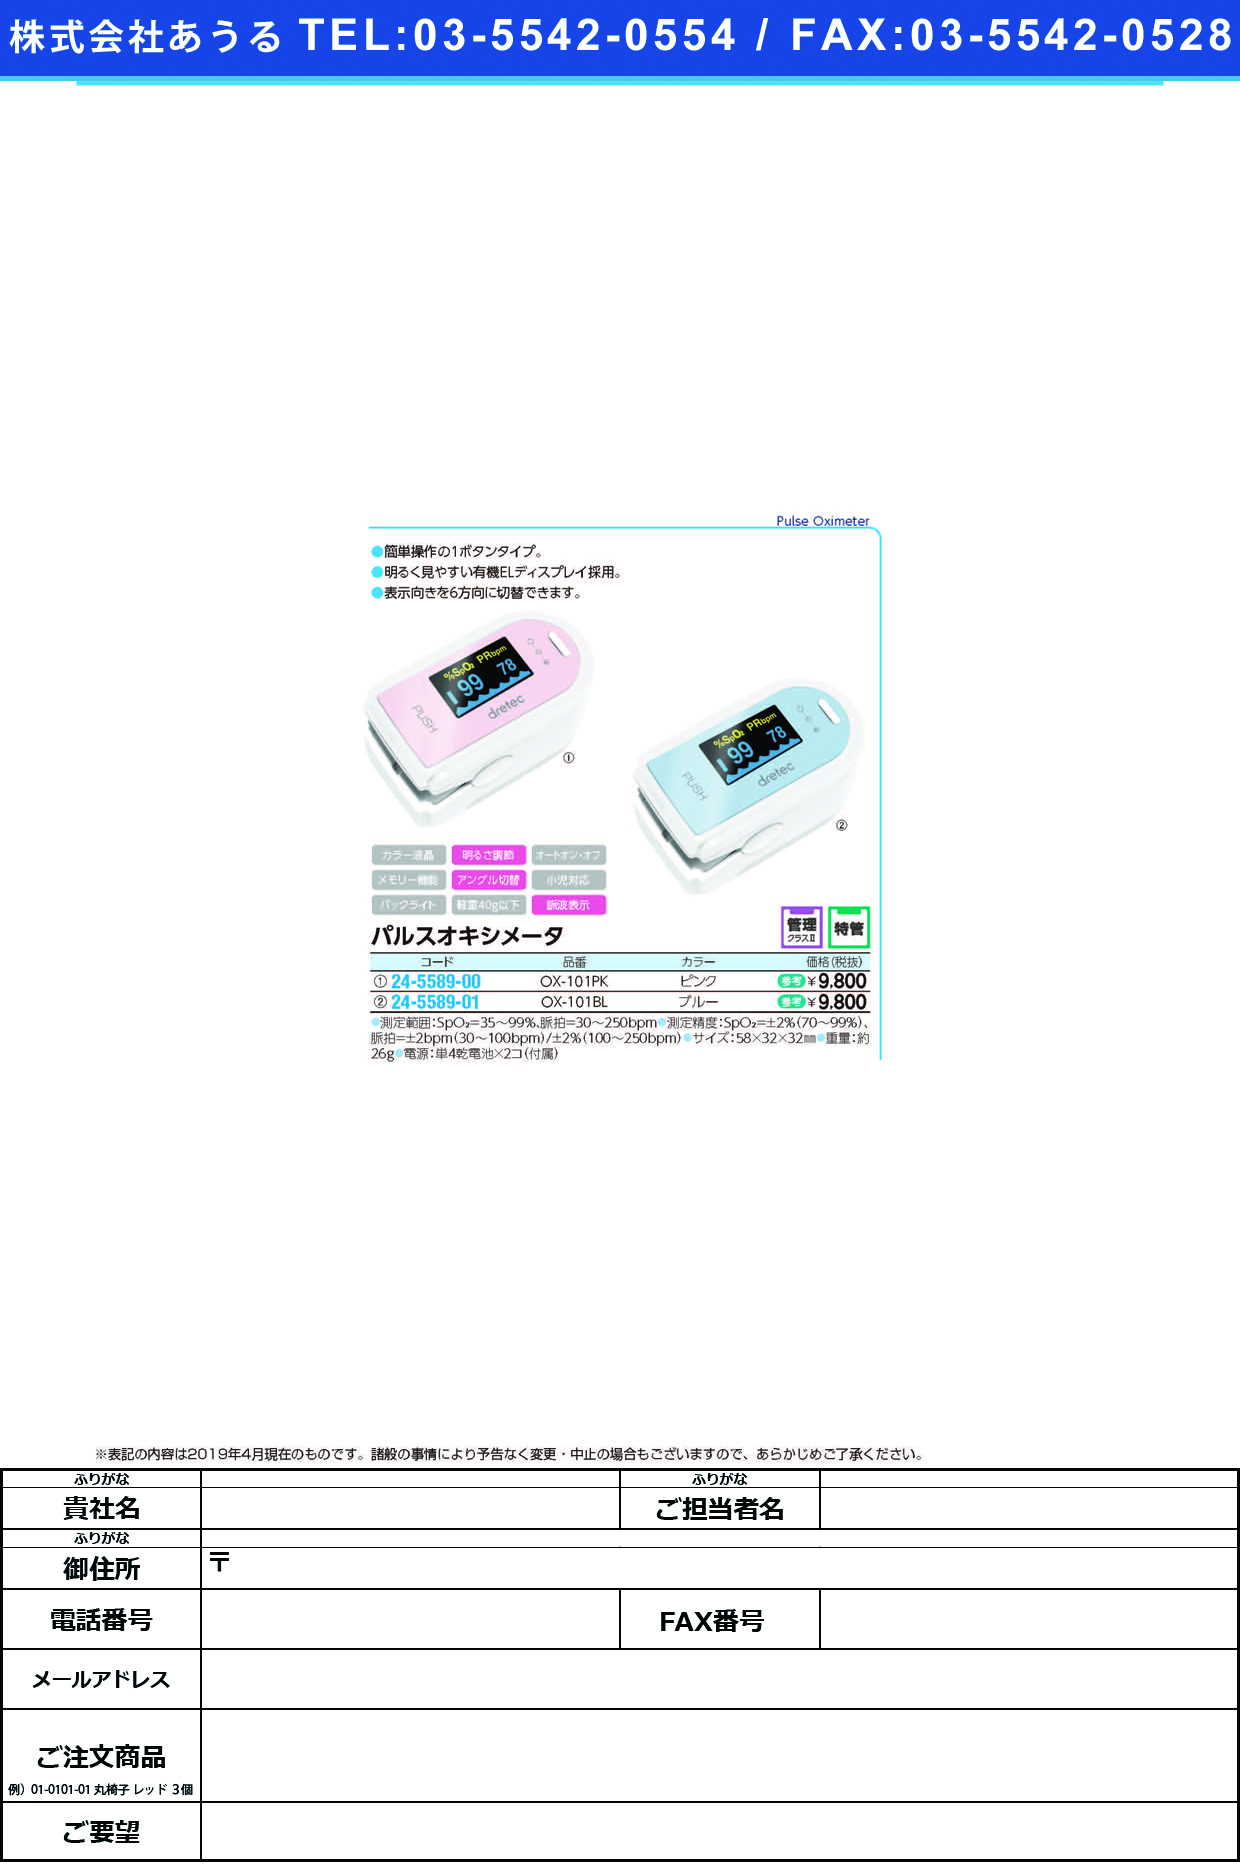 (24-5589-01)パルスオキシメータ OX-101BL(ﾌﾞﾙｰ) ﾊﾟﾙｽｵｷｼﾒｰﾀ(ドリテック)【1台単位】【2019年カタログ商品】